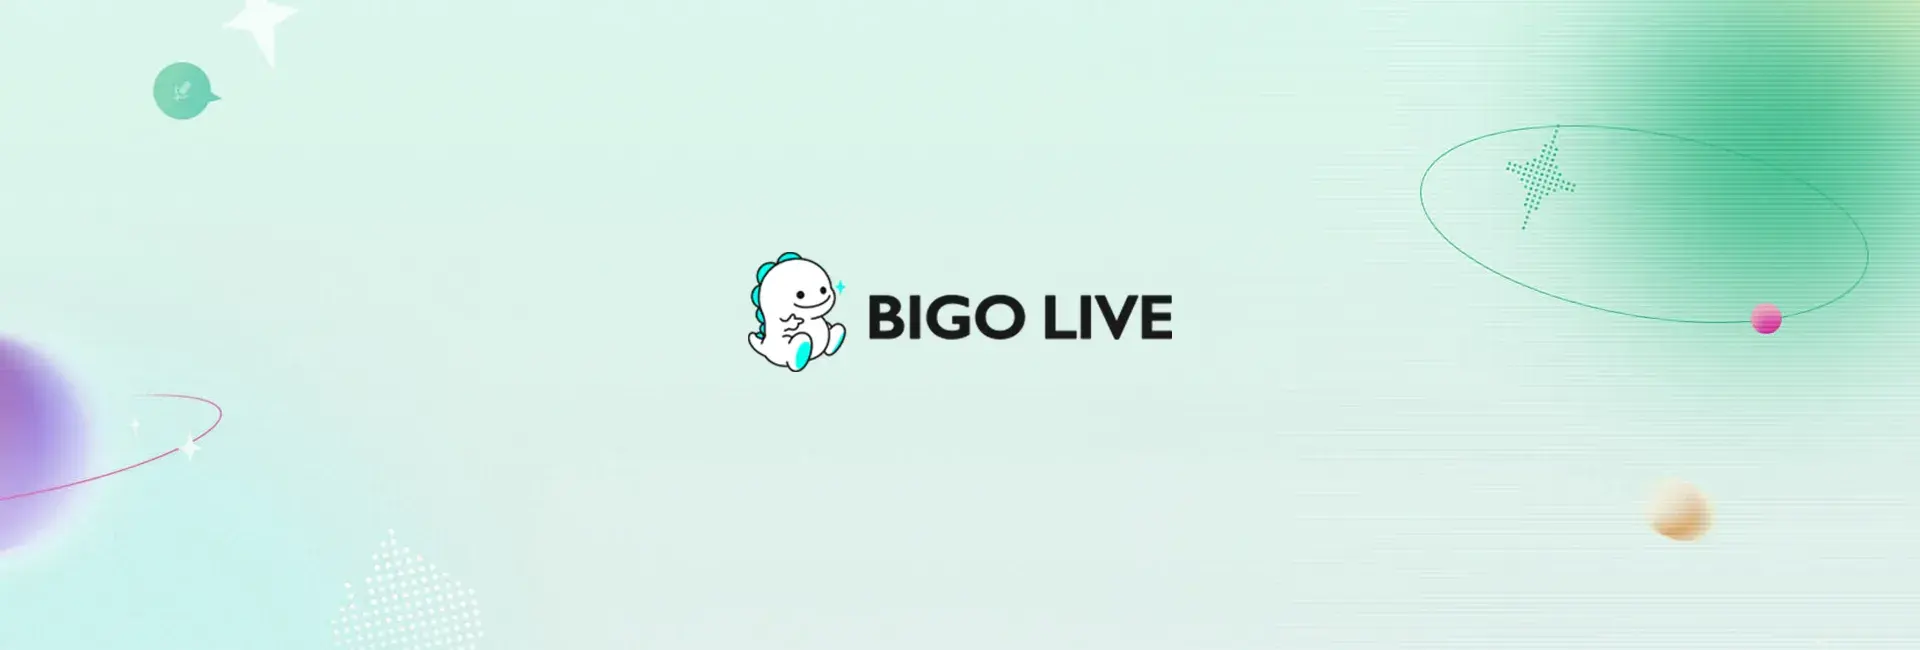 Bigo Live - 84 Diamonds (Global)